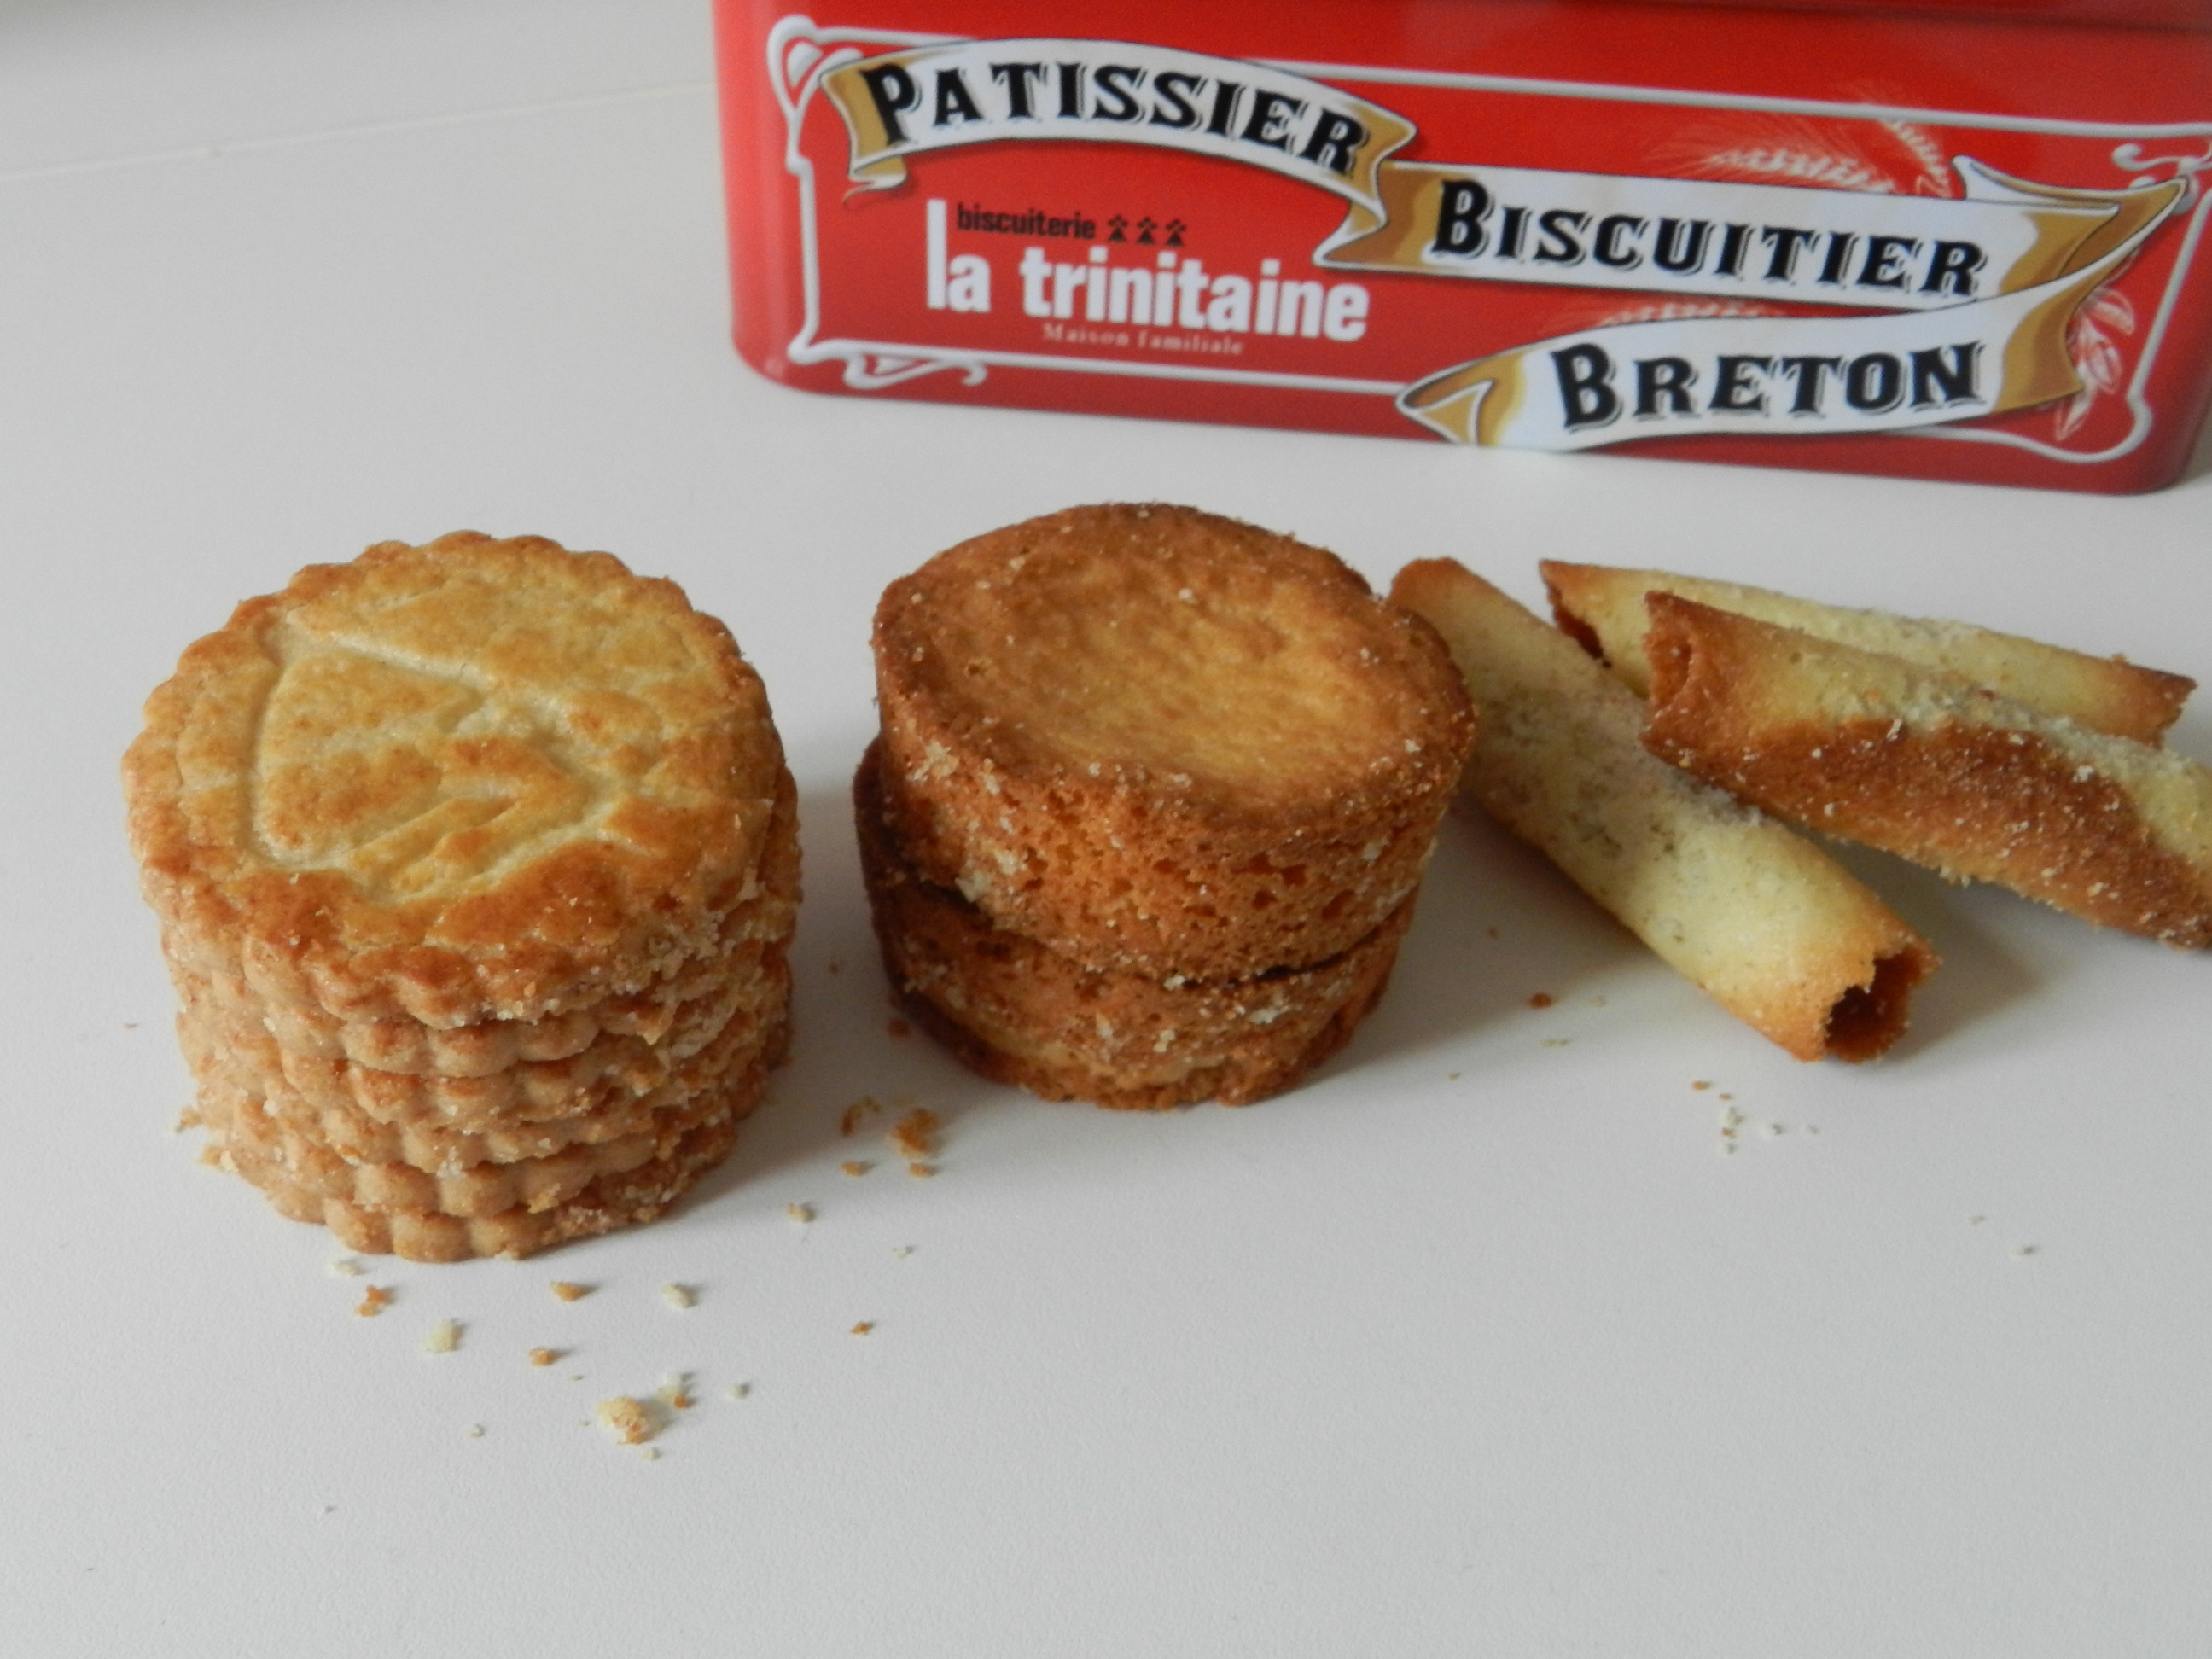 biscuits-la-trinitaine.jpg